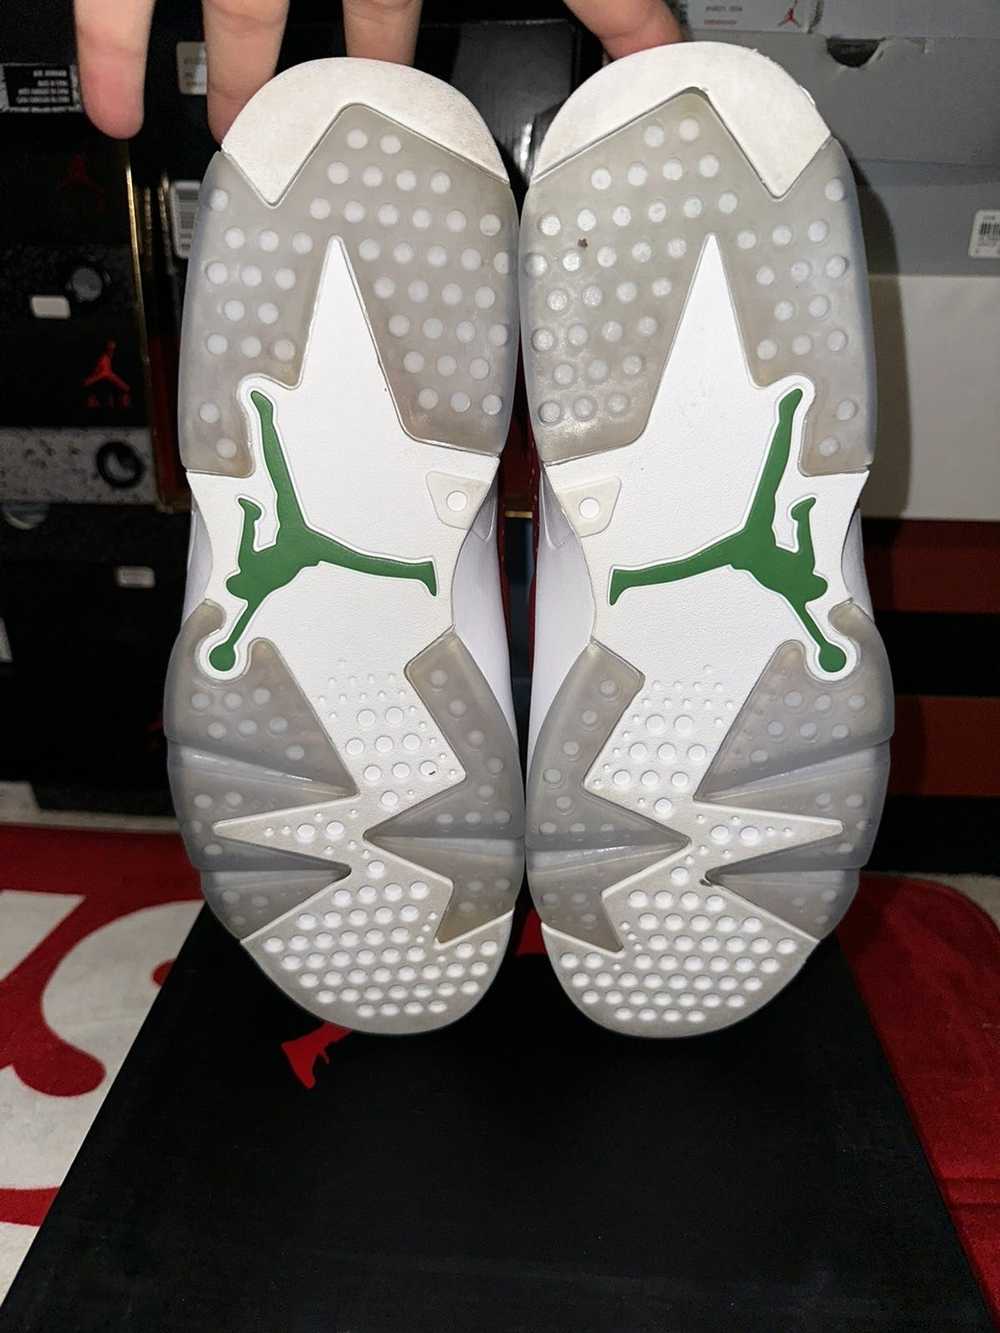 Jordan Brand × Nike Air Jordan 6 “Spizike” - image 5